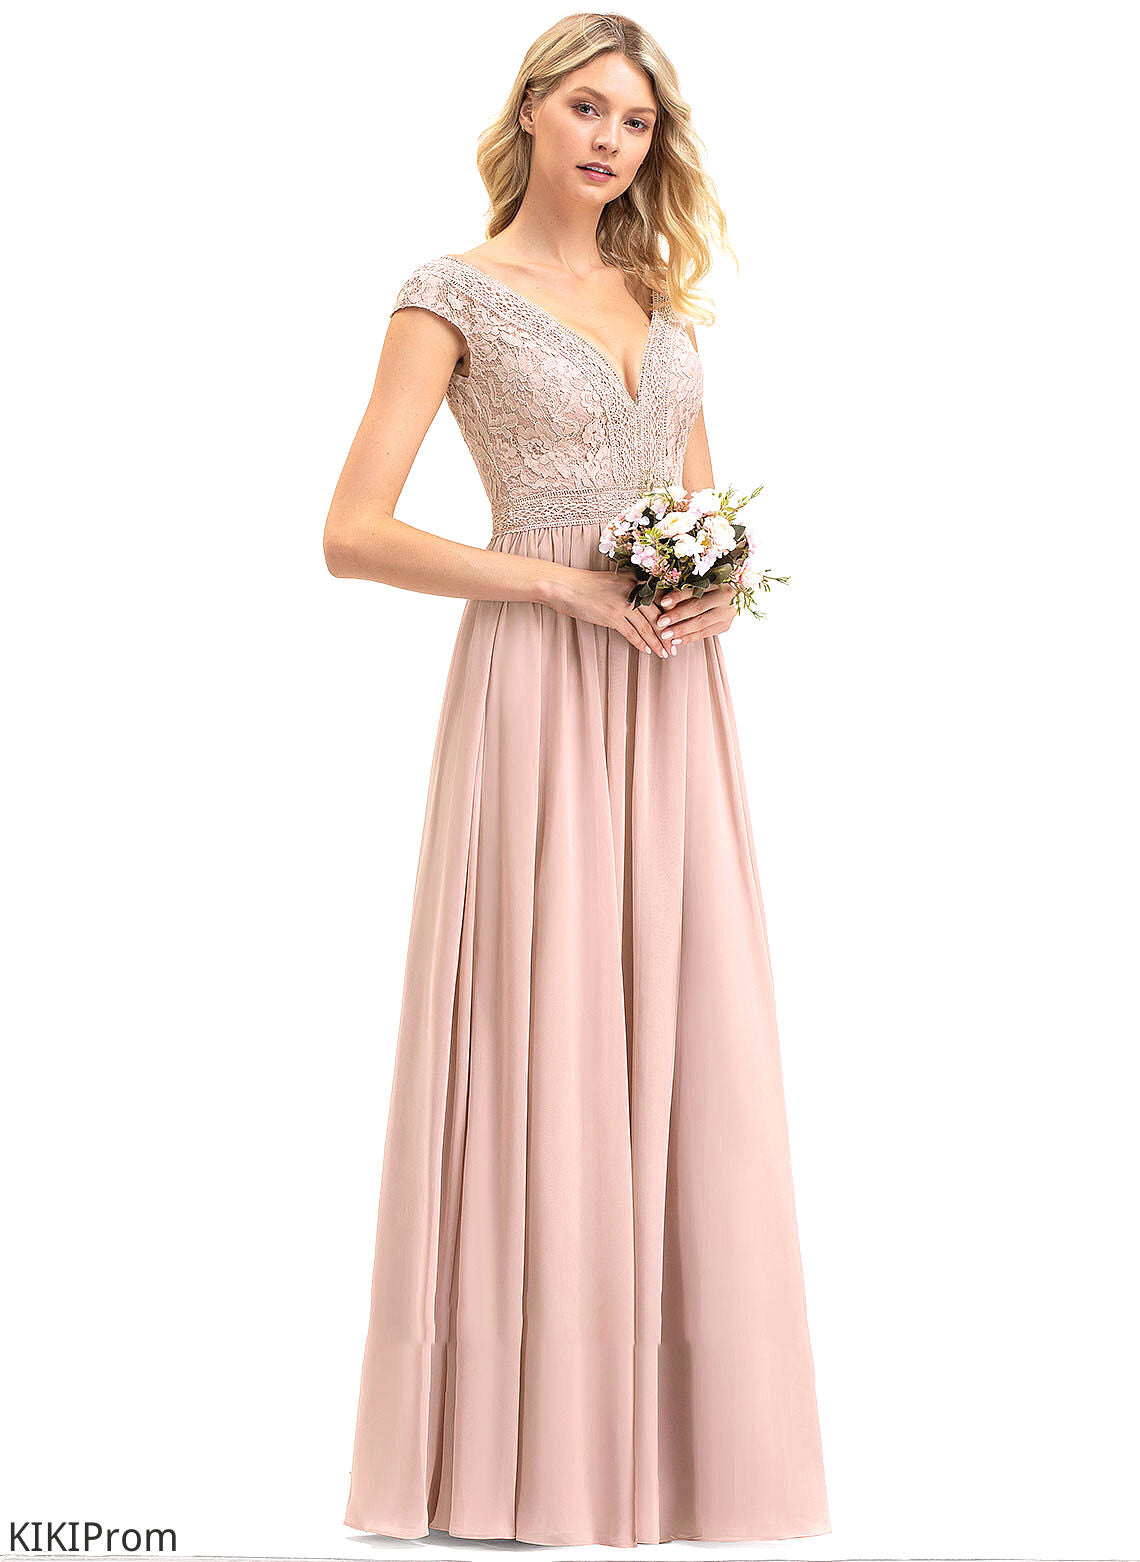 Silhouette A-Line Length Straps Floor-Length Lace Neckline Fabric V-neck Dana Bridesmaid Dresses